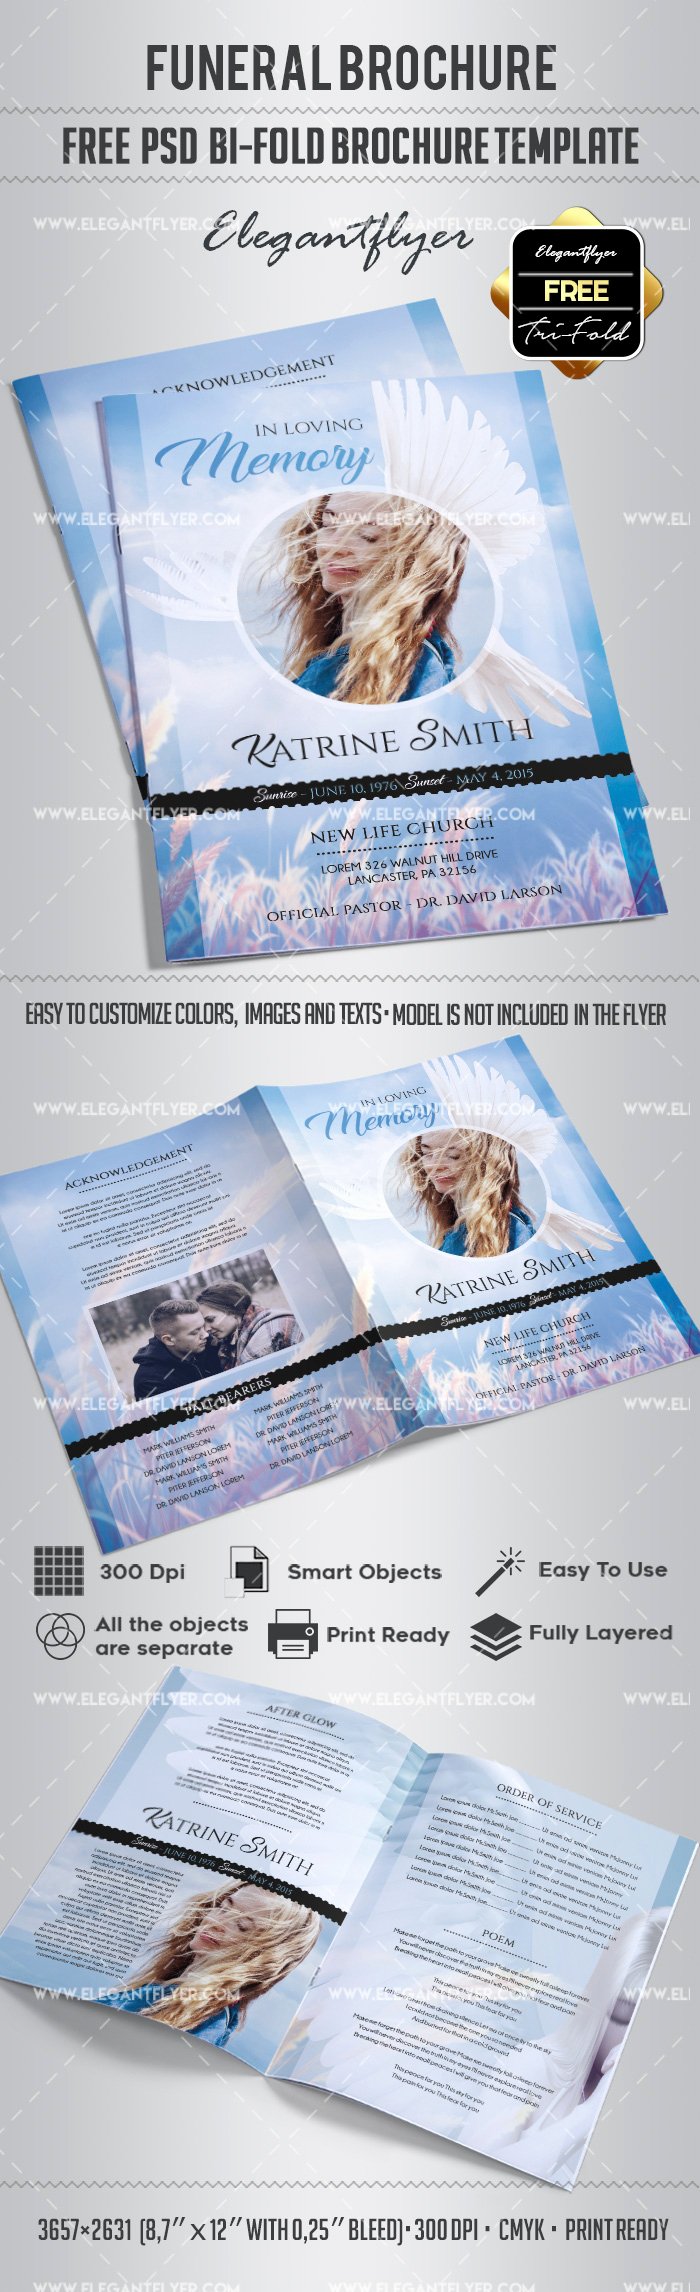 Funeral Brochure Template Free Best Of Free Funeral Bi Fold Brochure – by Elegantflyer